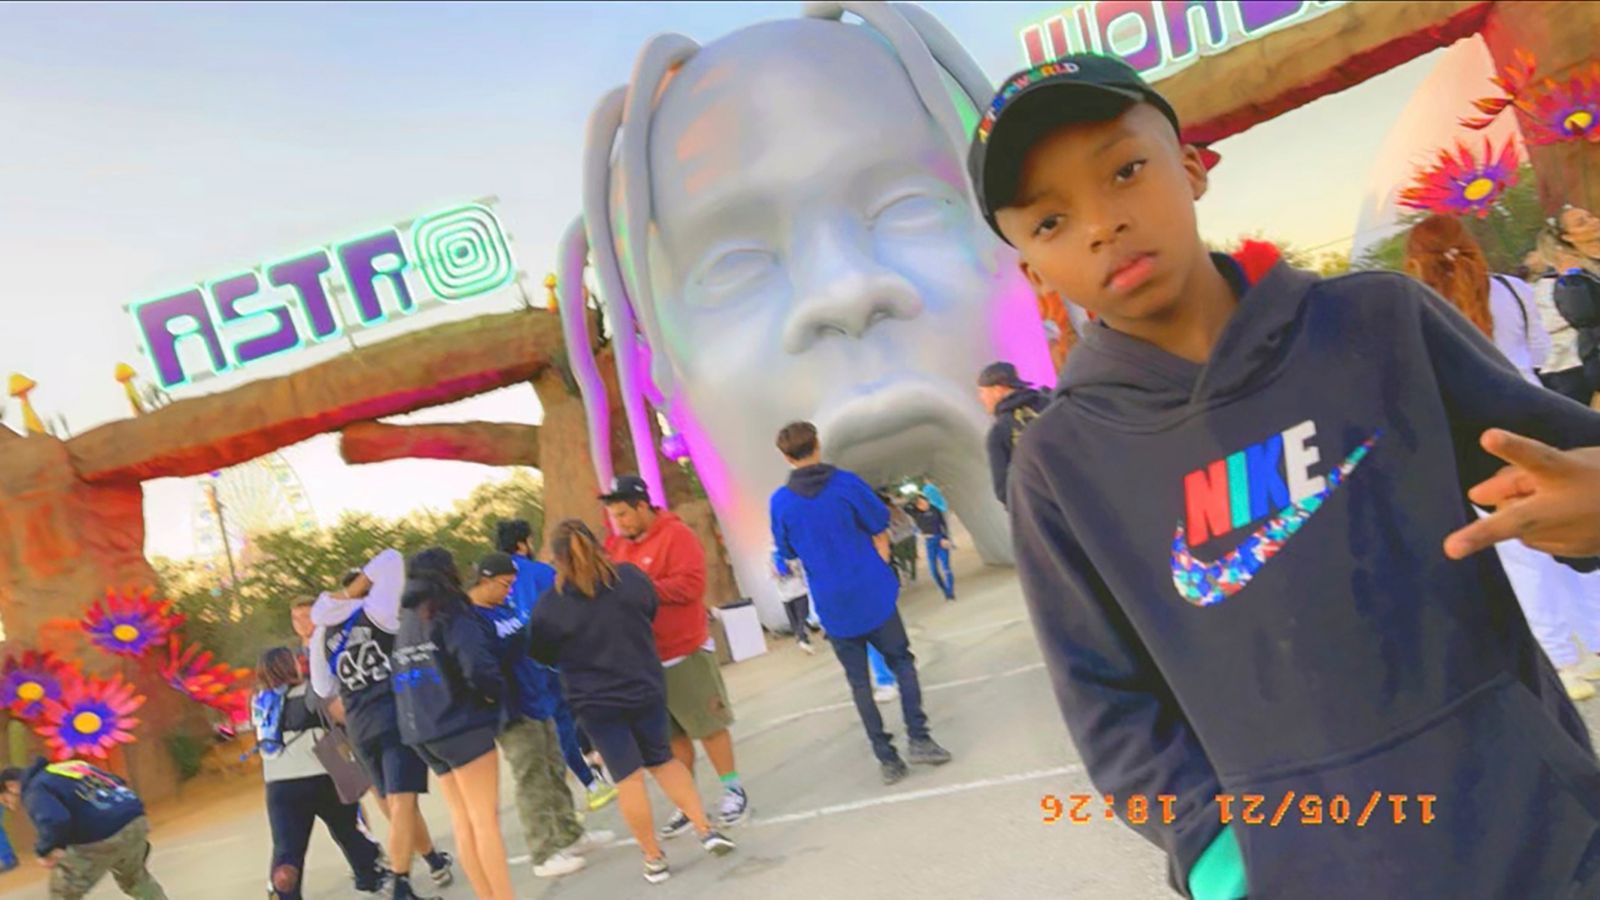 Kematian konser Travis Scott: Anak laki-laki Dallas, 9, menjadi orang termuda yang meninggal setelah festival Astroworld naksir |  Berita Inggris